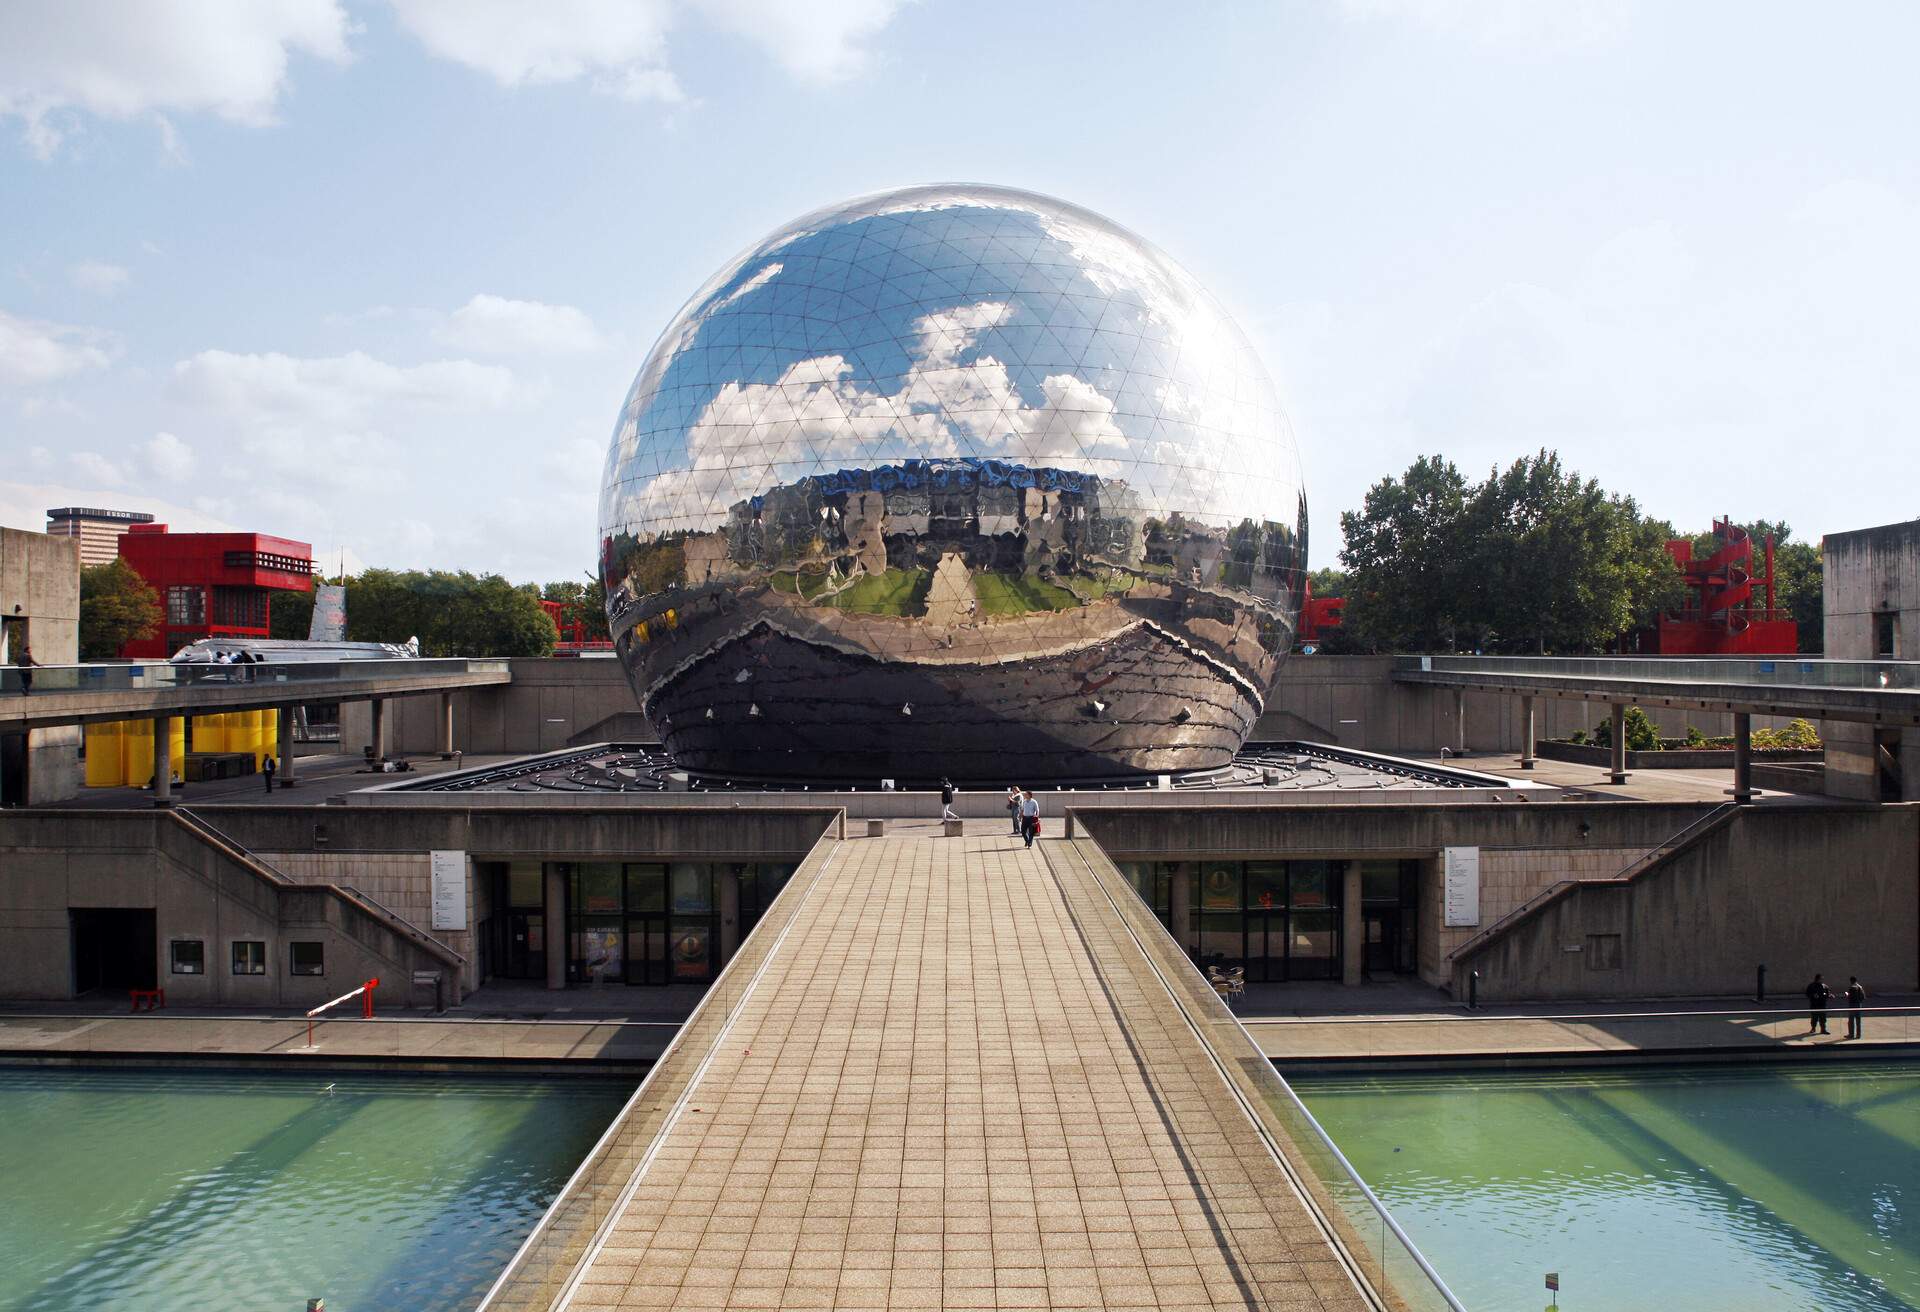 The Géode geodesic dome in La Villette, Paris France